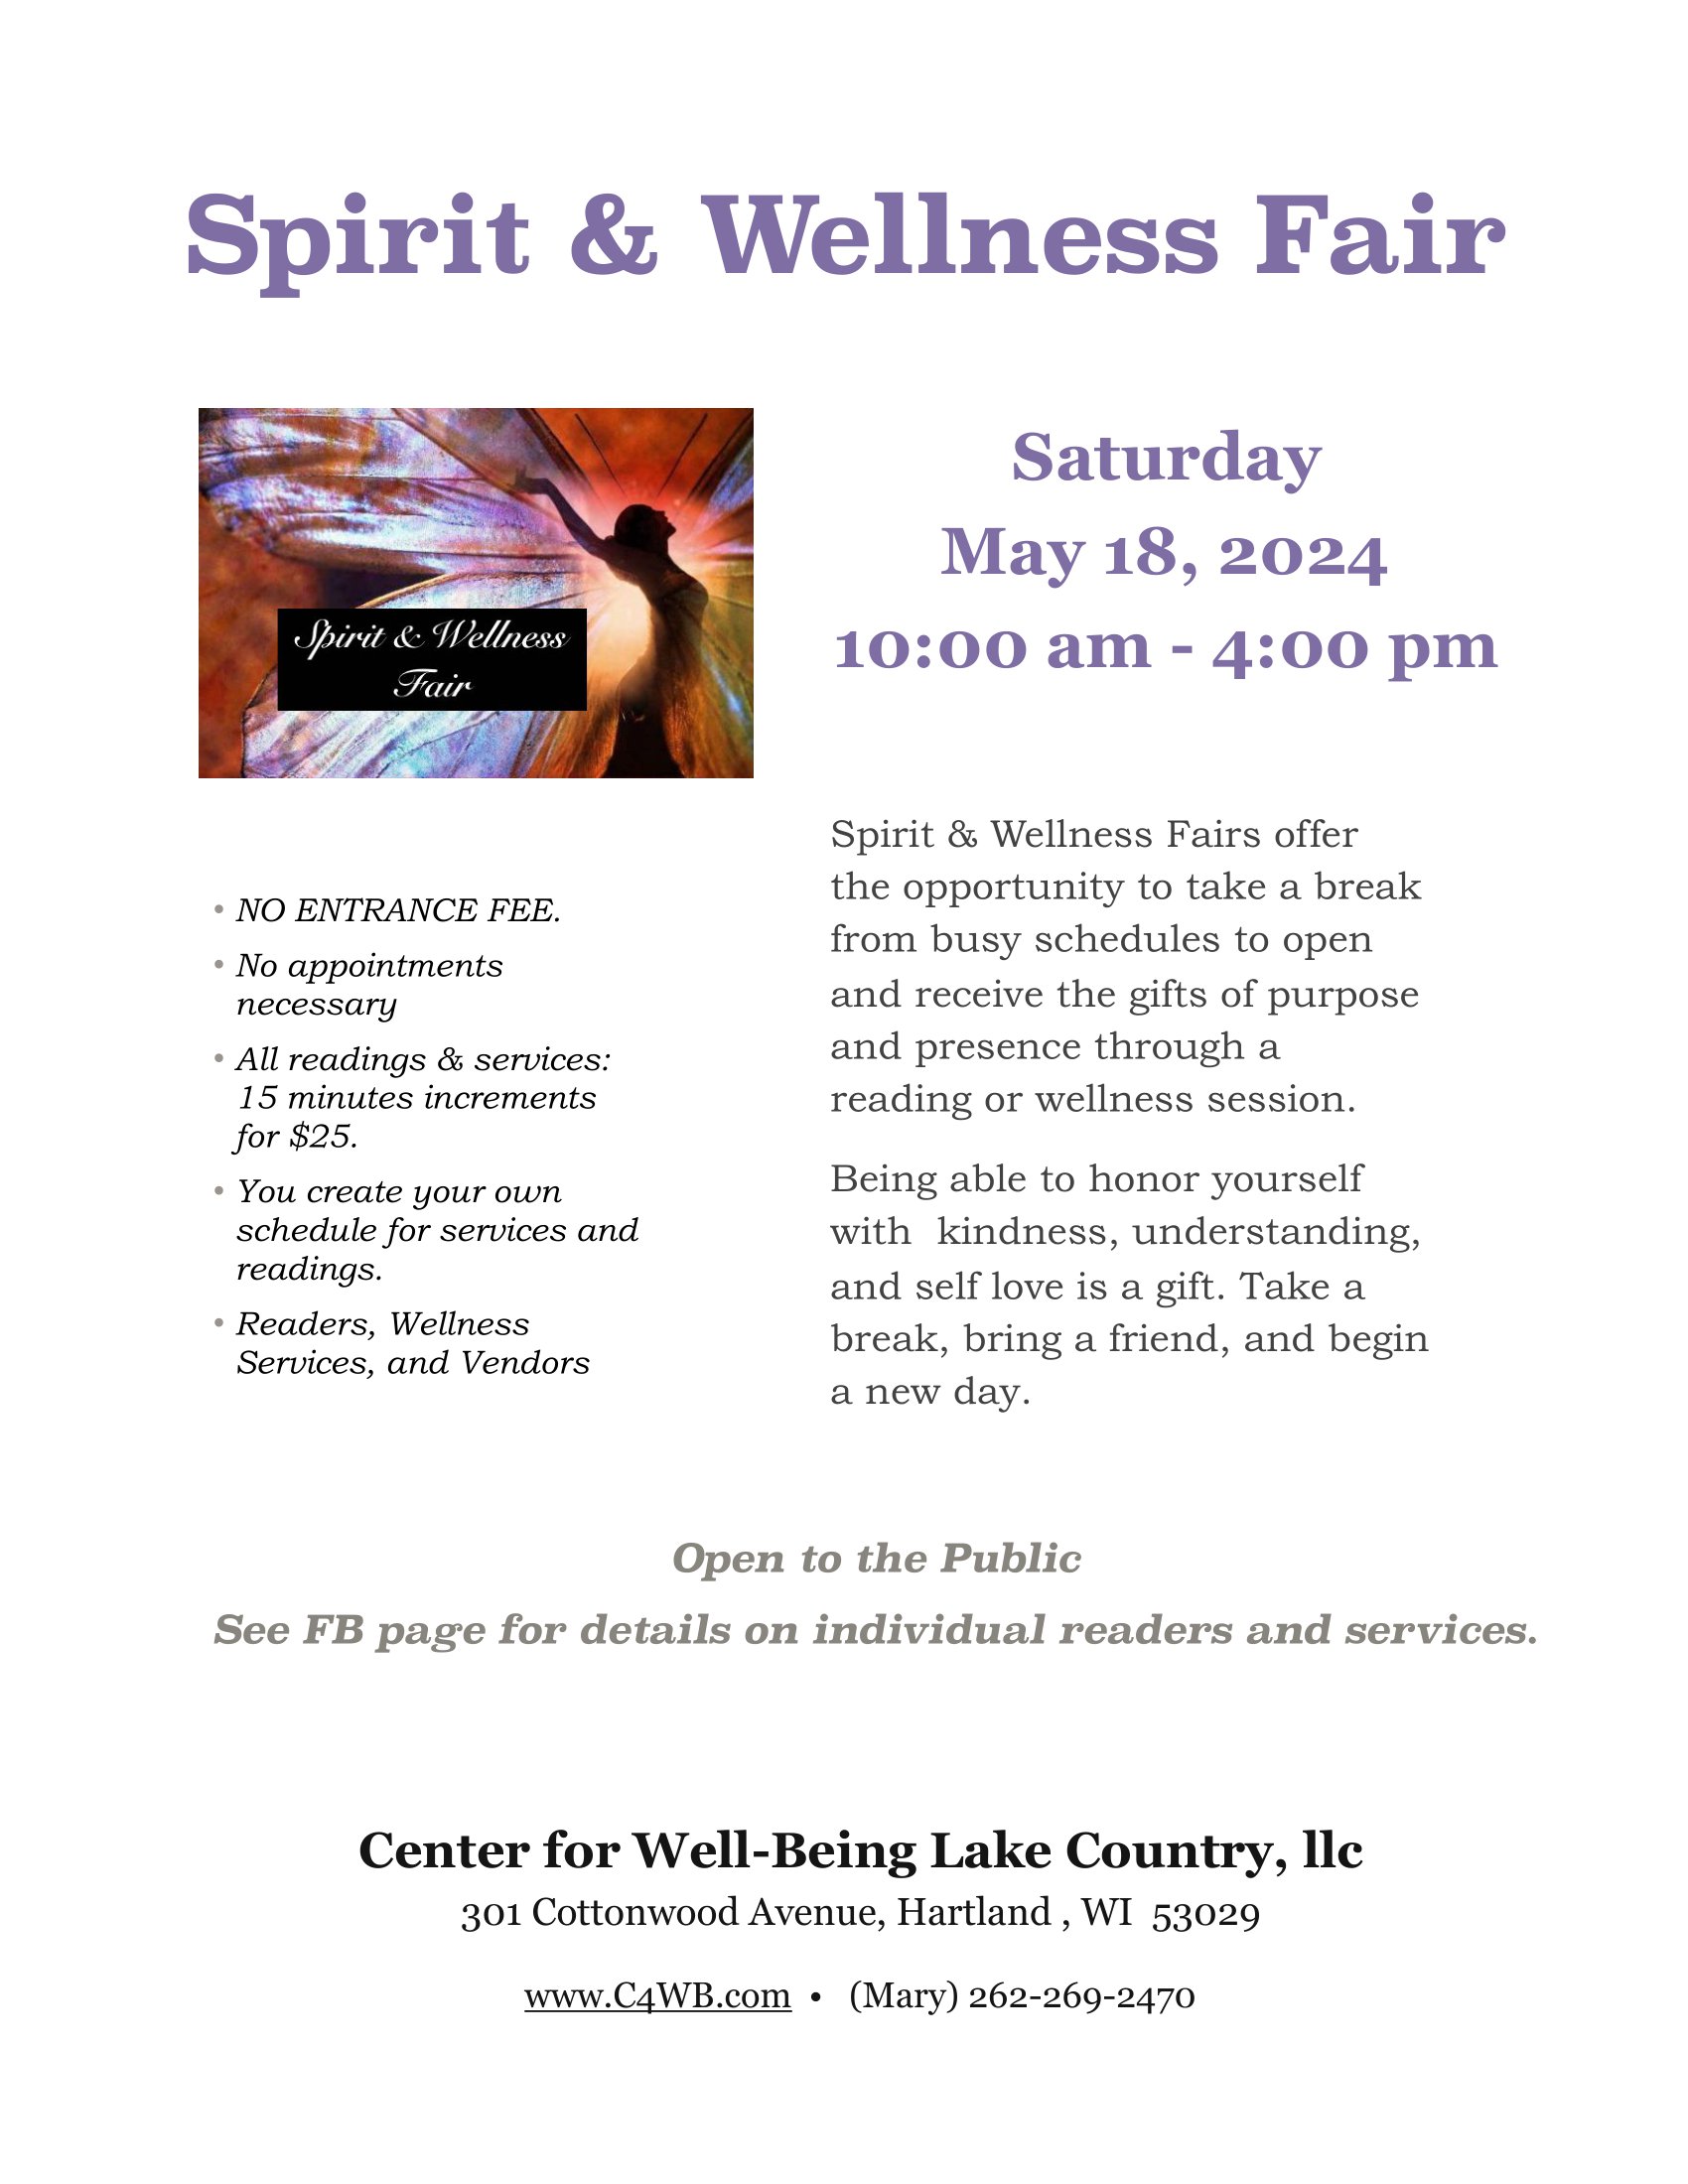 spirit wellness fair